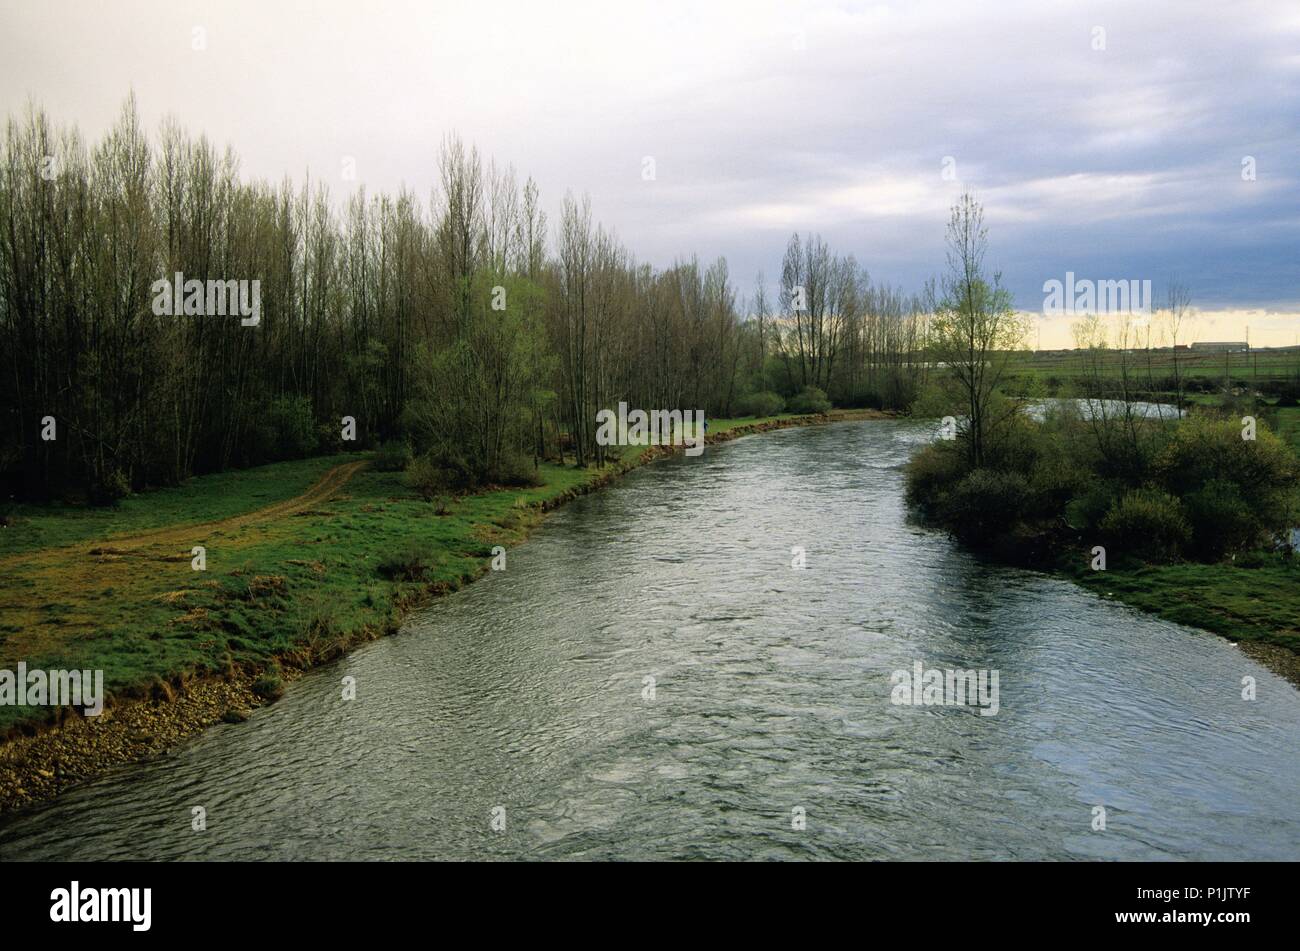 Cueza river next to Calzadilla de la Cueza; (Sant James pilgrimage way to Santiago). Stock Photo